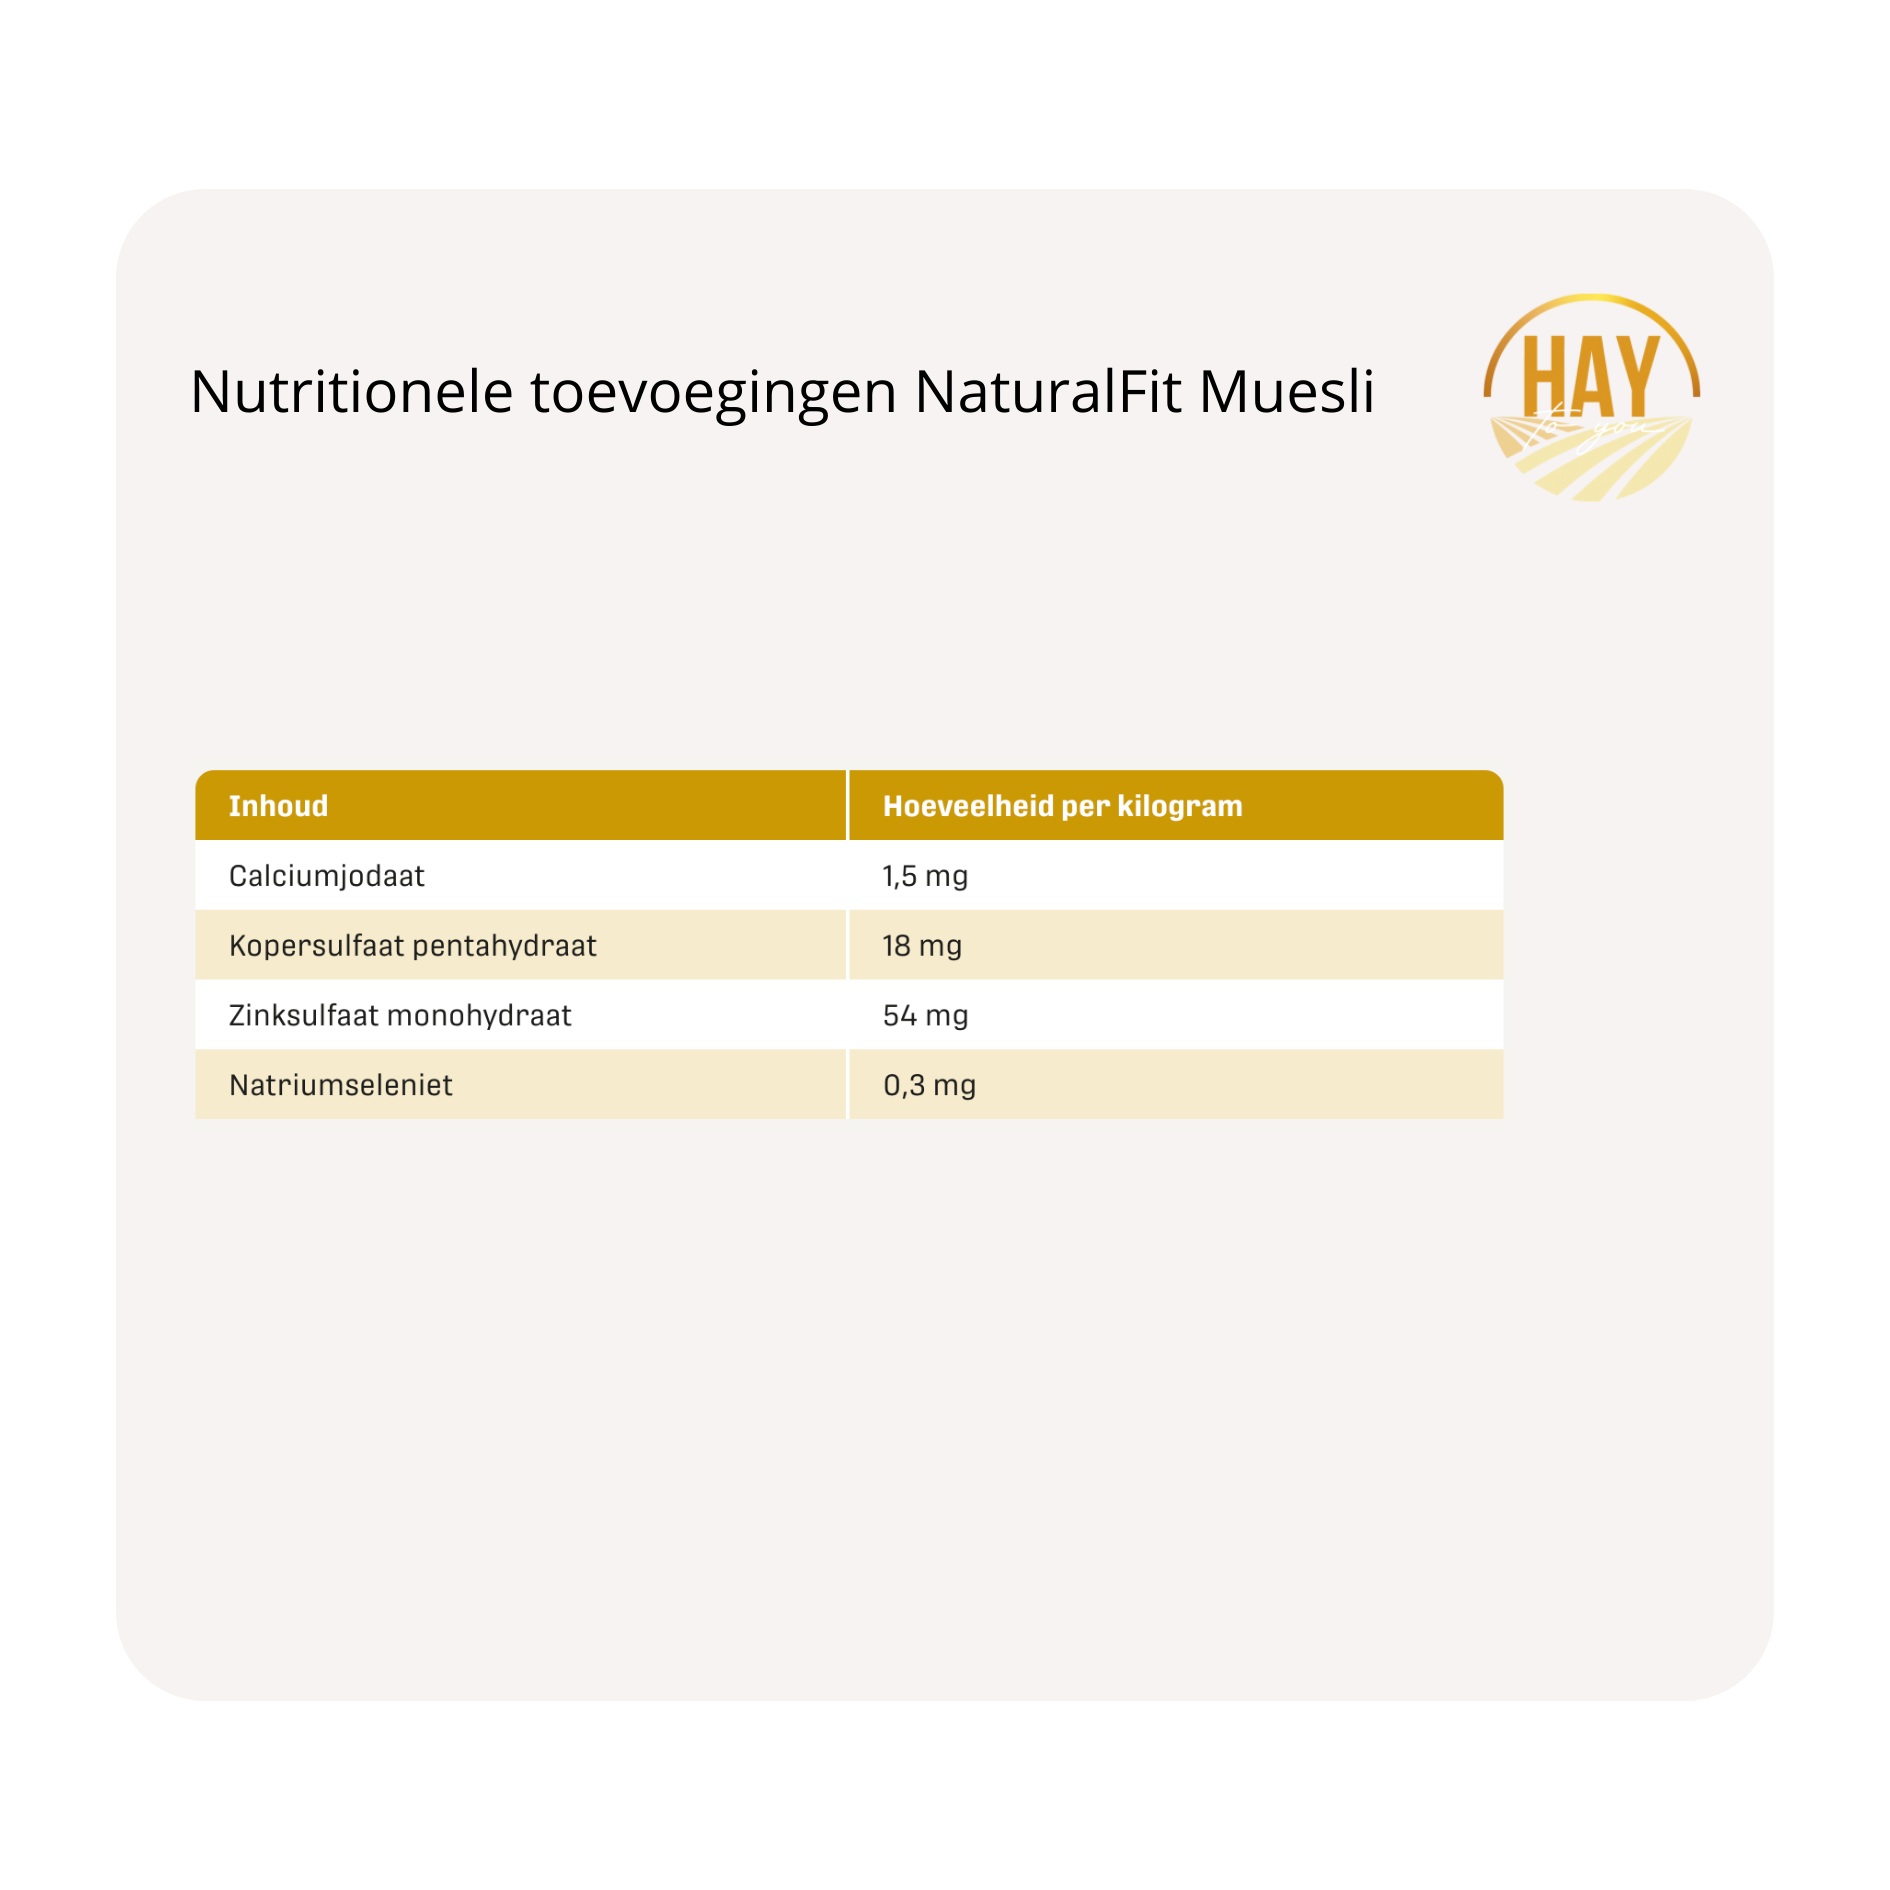 nutri toevoeging Metazoa NaturalFit Muesli krachtvoer en supplementen